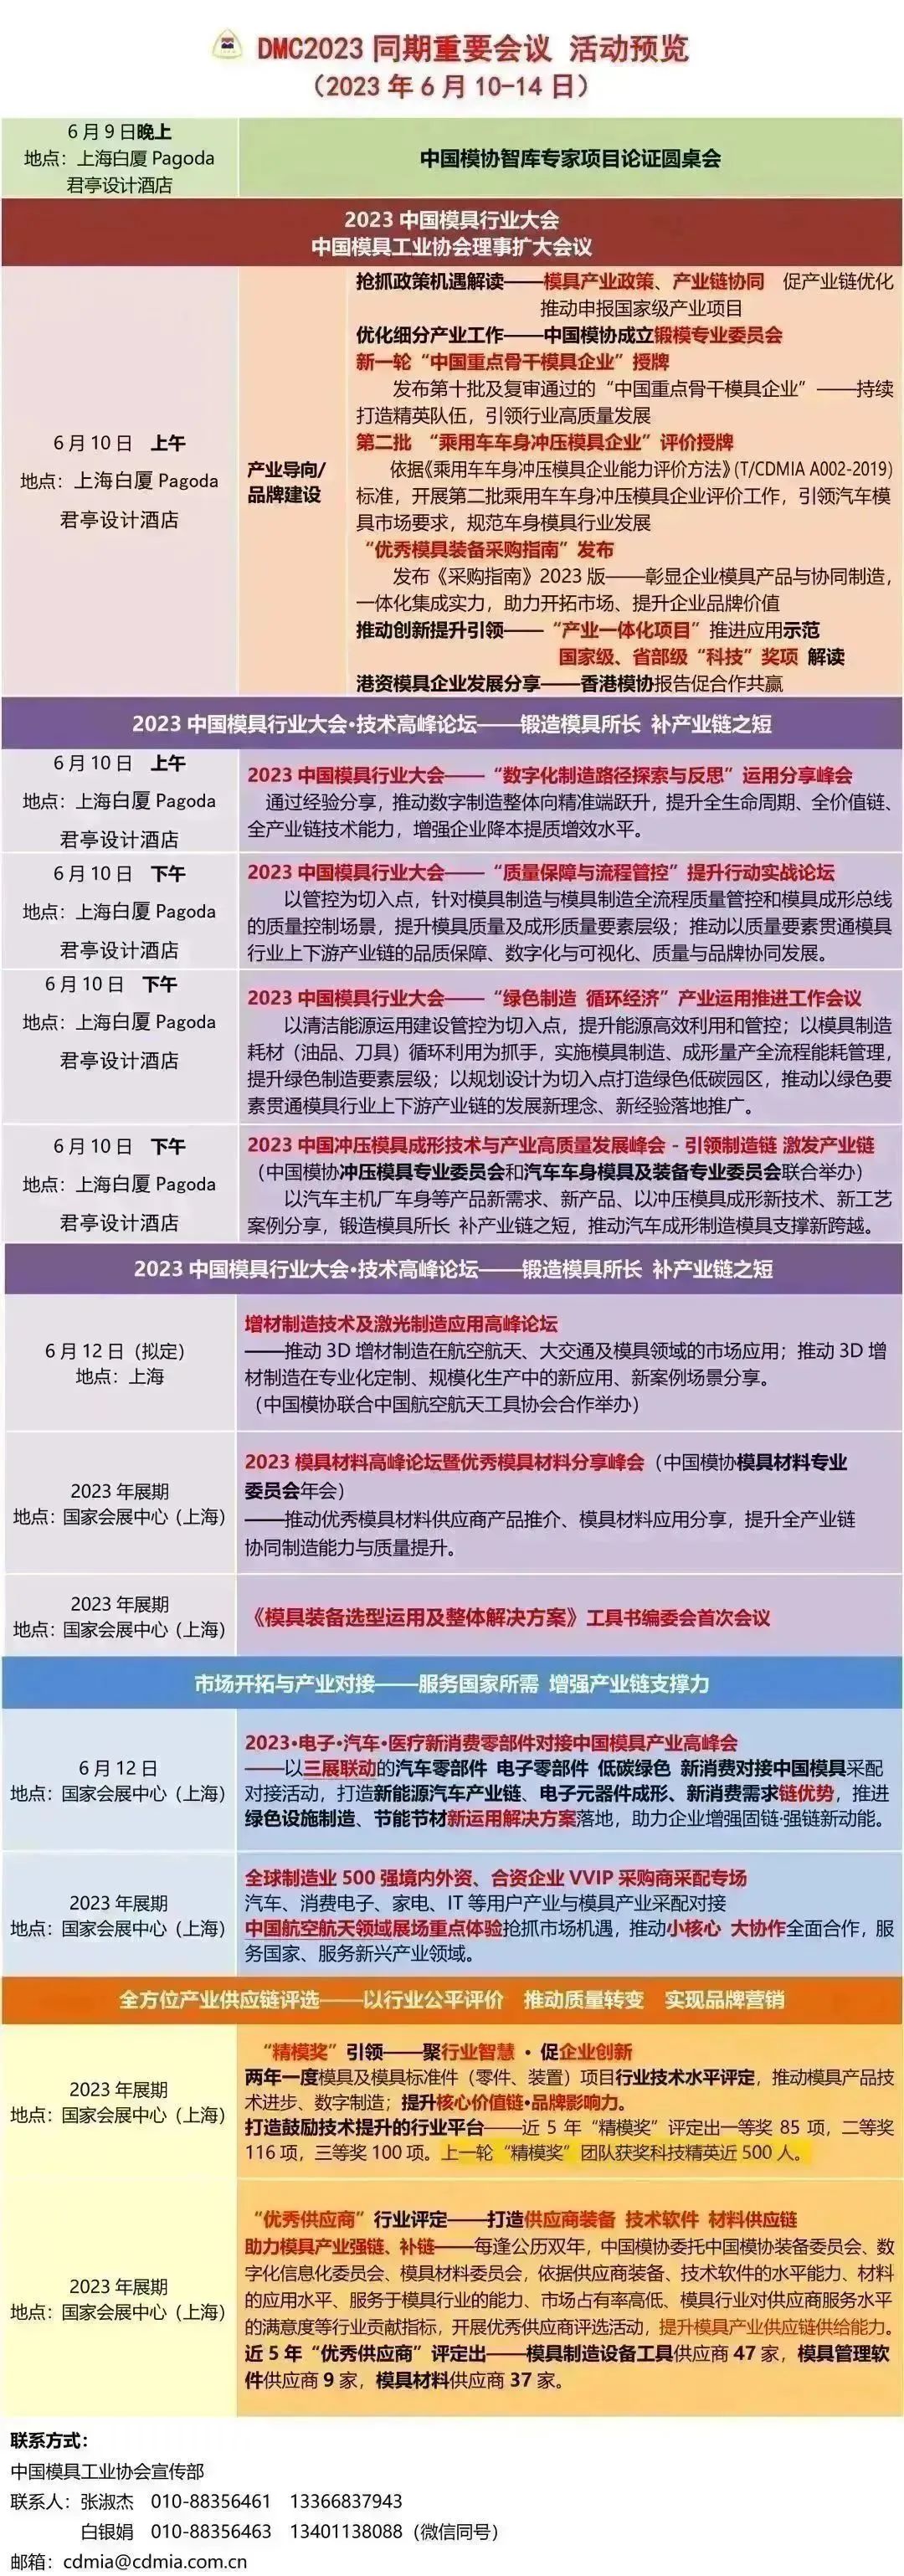 上海国际模具技术和设备展 DMC banner10.jpg 